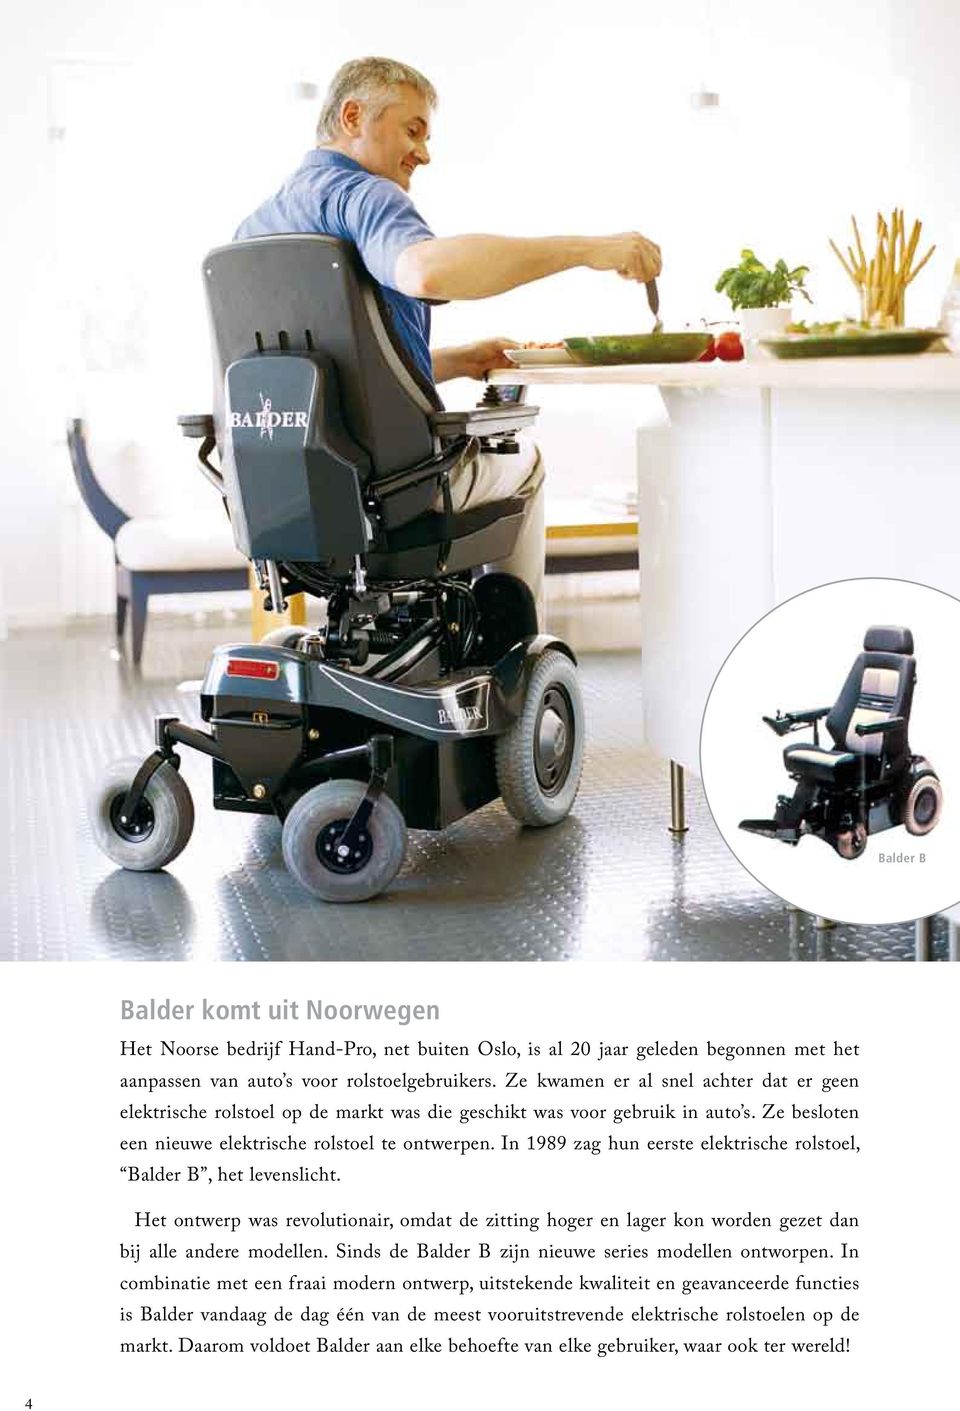 In 1989 zag hun eerste elektrische rolstoel, Balder B, het levenslicht. Het ontwerp was revolutionair, omdat de zitting hoger en lager kon worden gezet dan bij alle andere modellen.